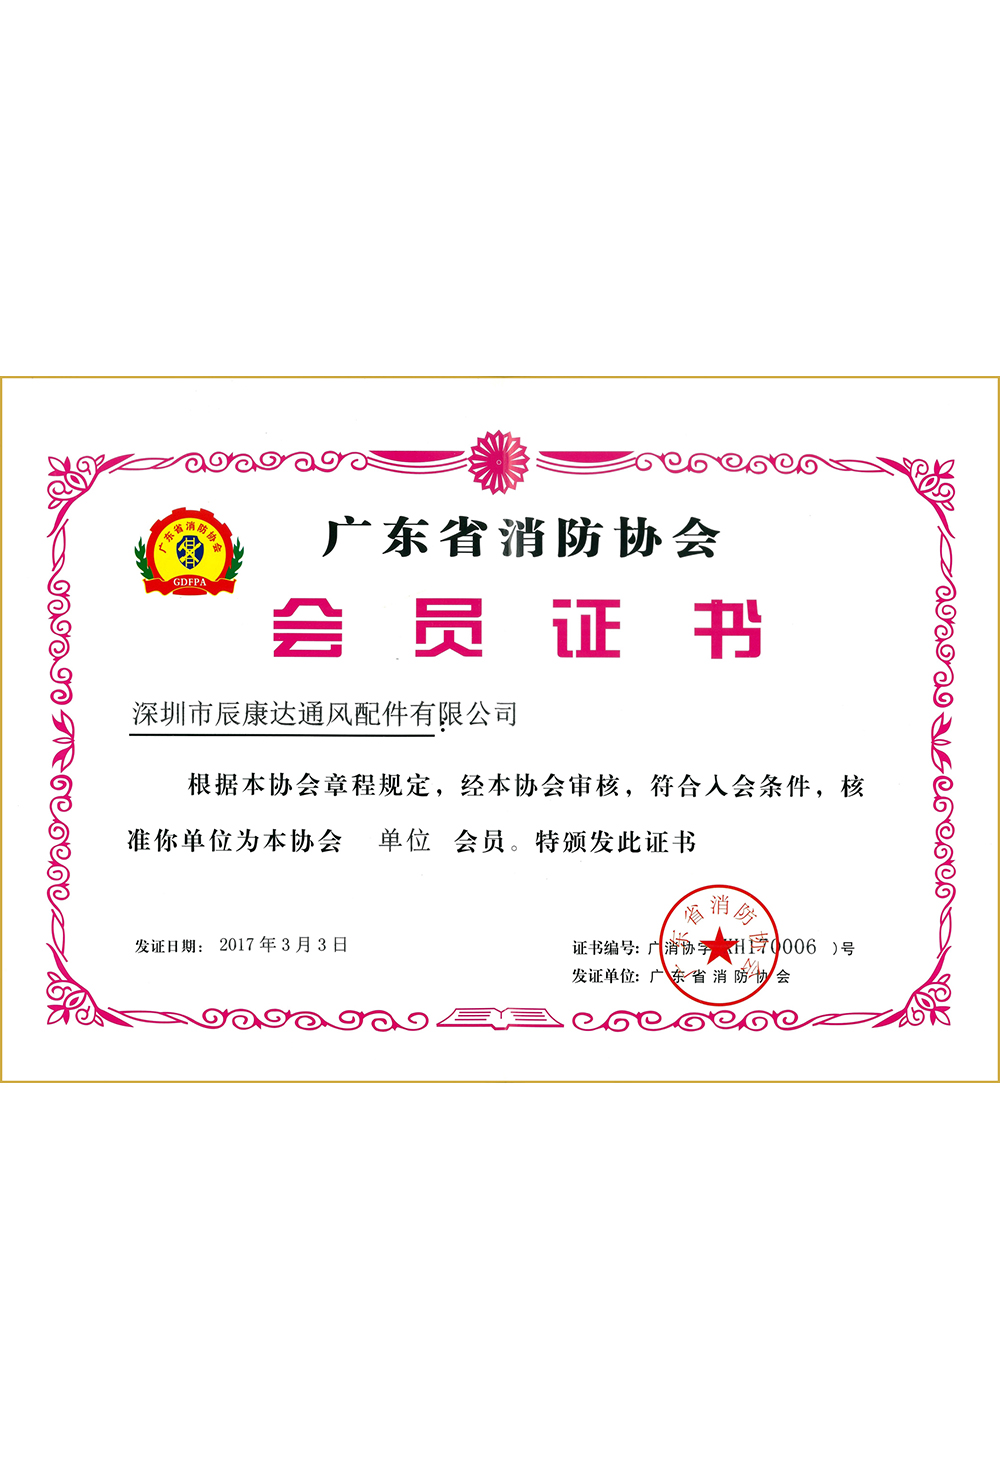 广东省消防协会会员证书